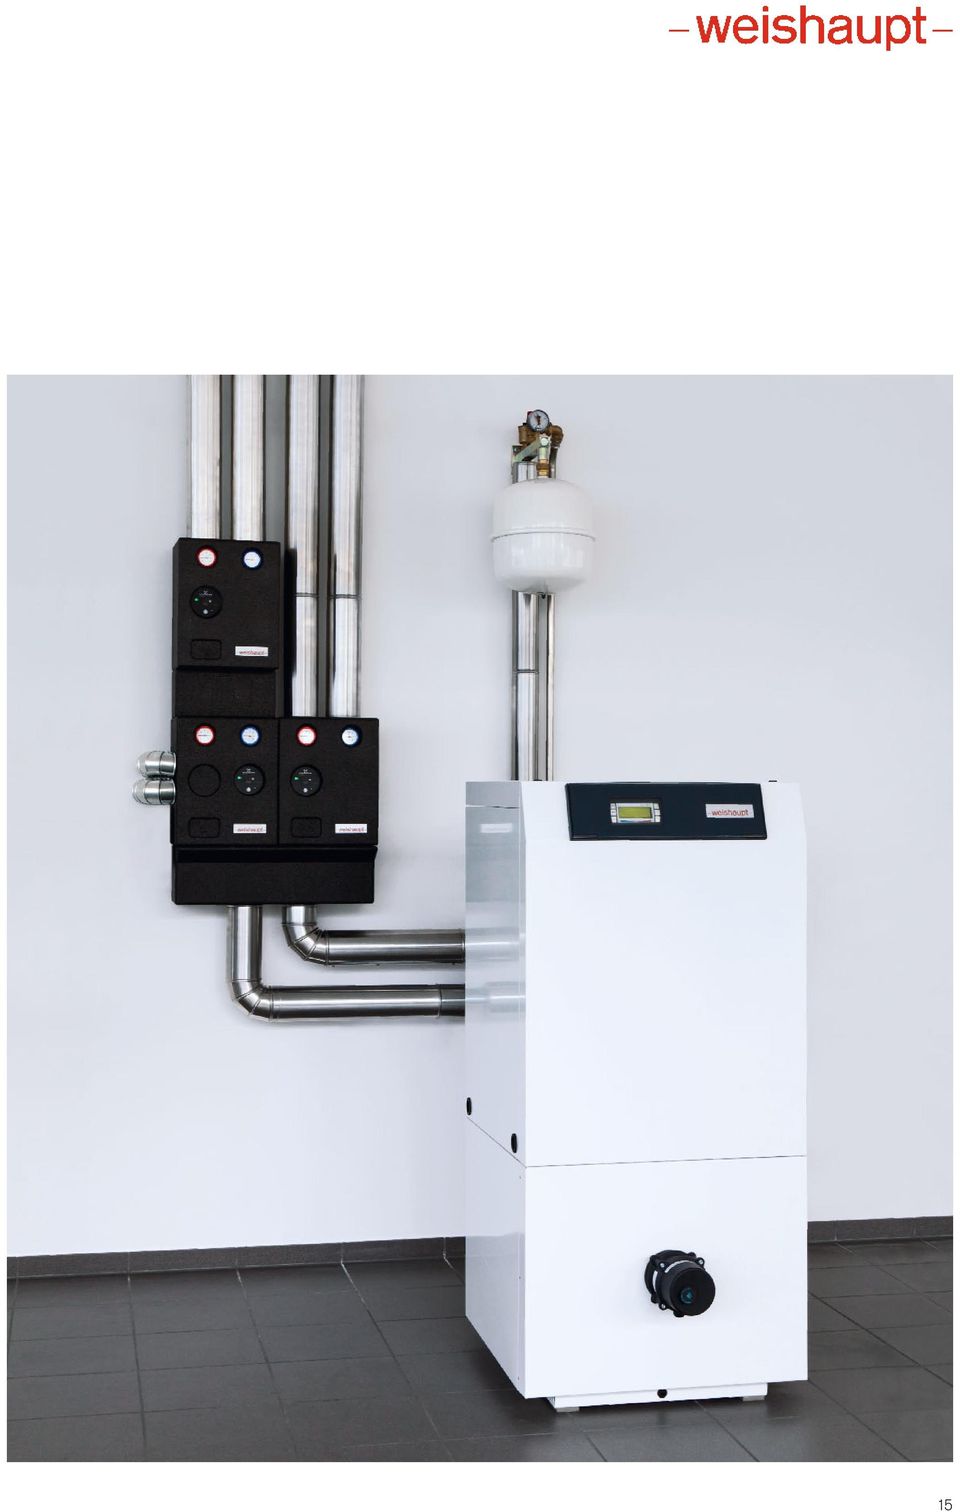 produkt Naturens varmeenergi Weishaupt varmepumper til opvarmning, køling  og brugsvand Information om varmepumper - PDF Free Download